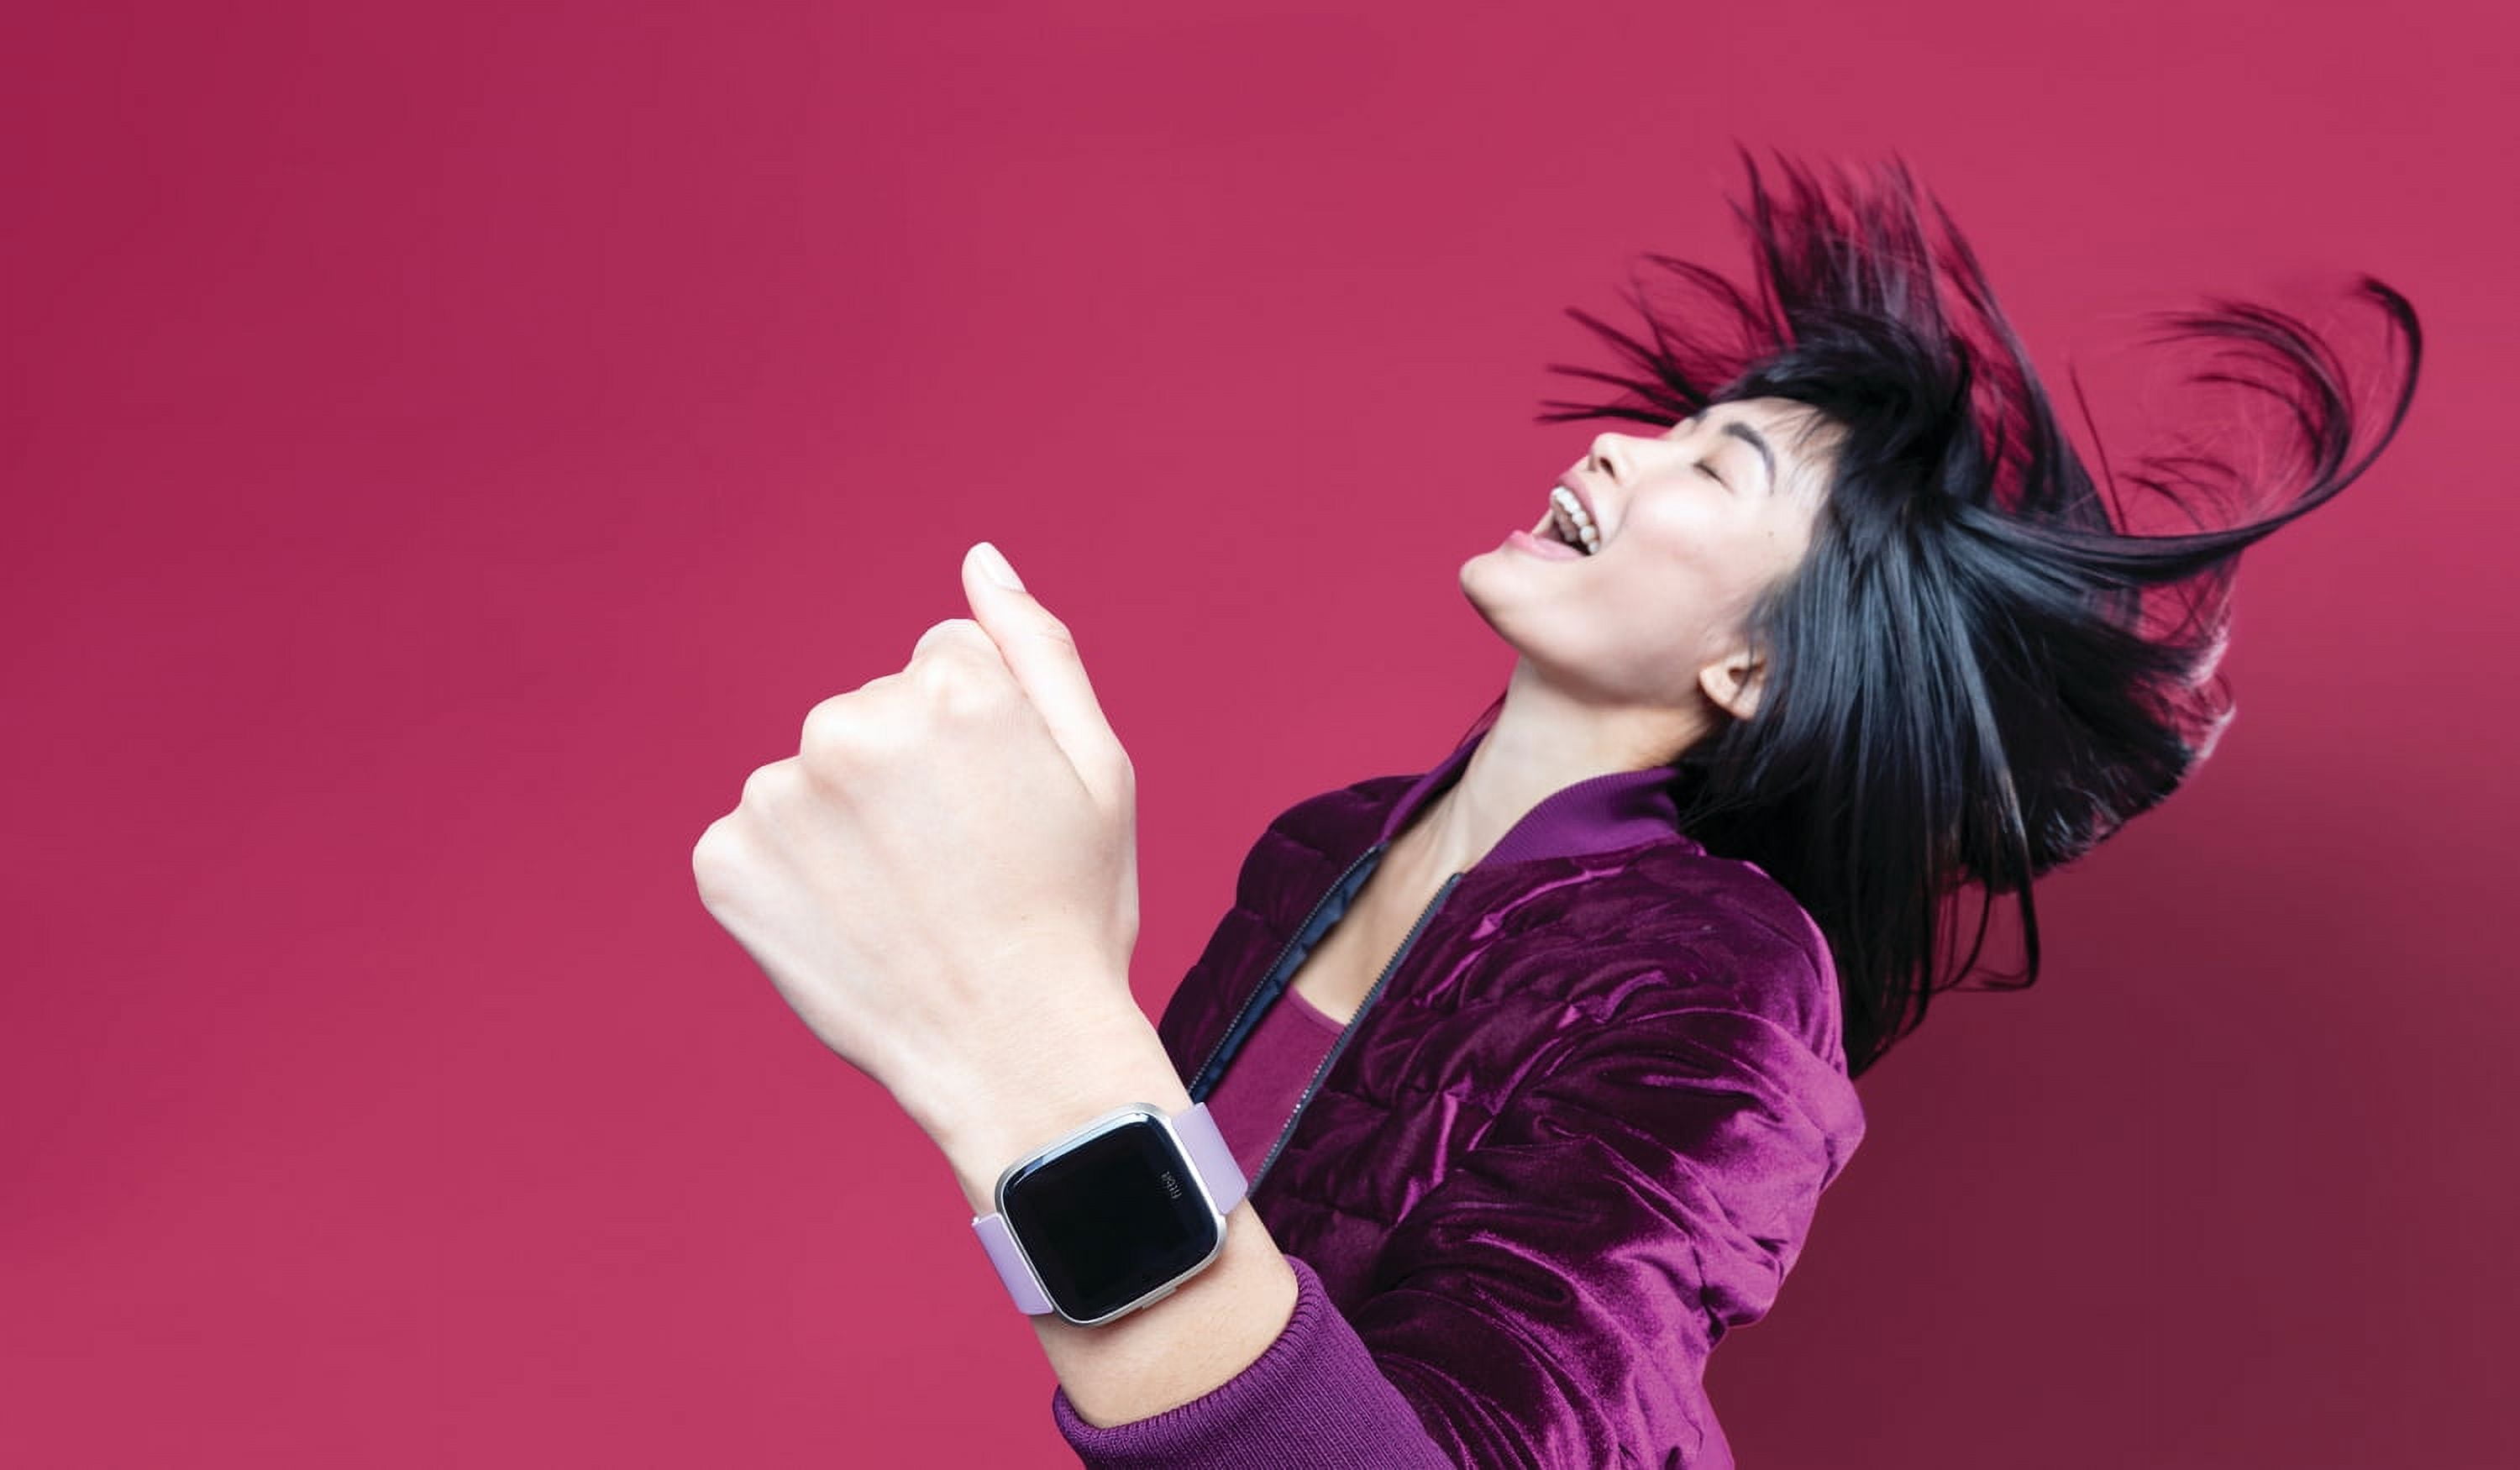 Fitbit Versa Lite Edition - Reloj inteligente, talla única (bandas S y L  incluidas), 1 unidad